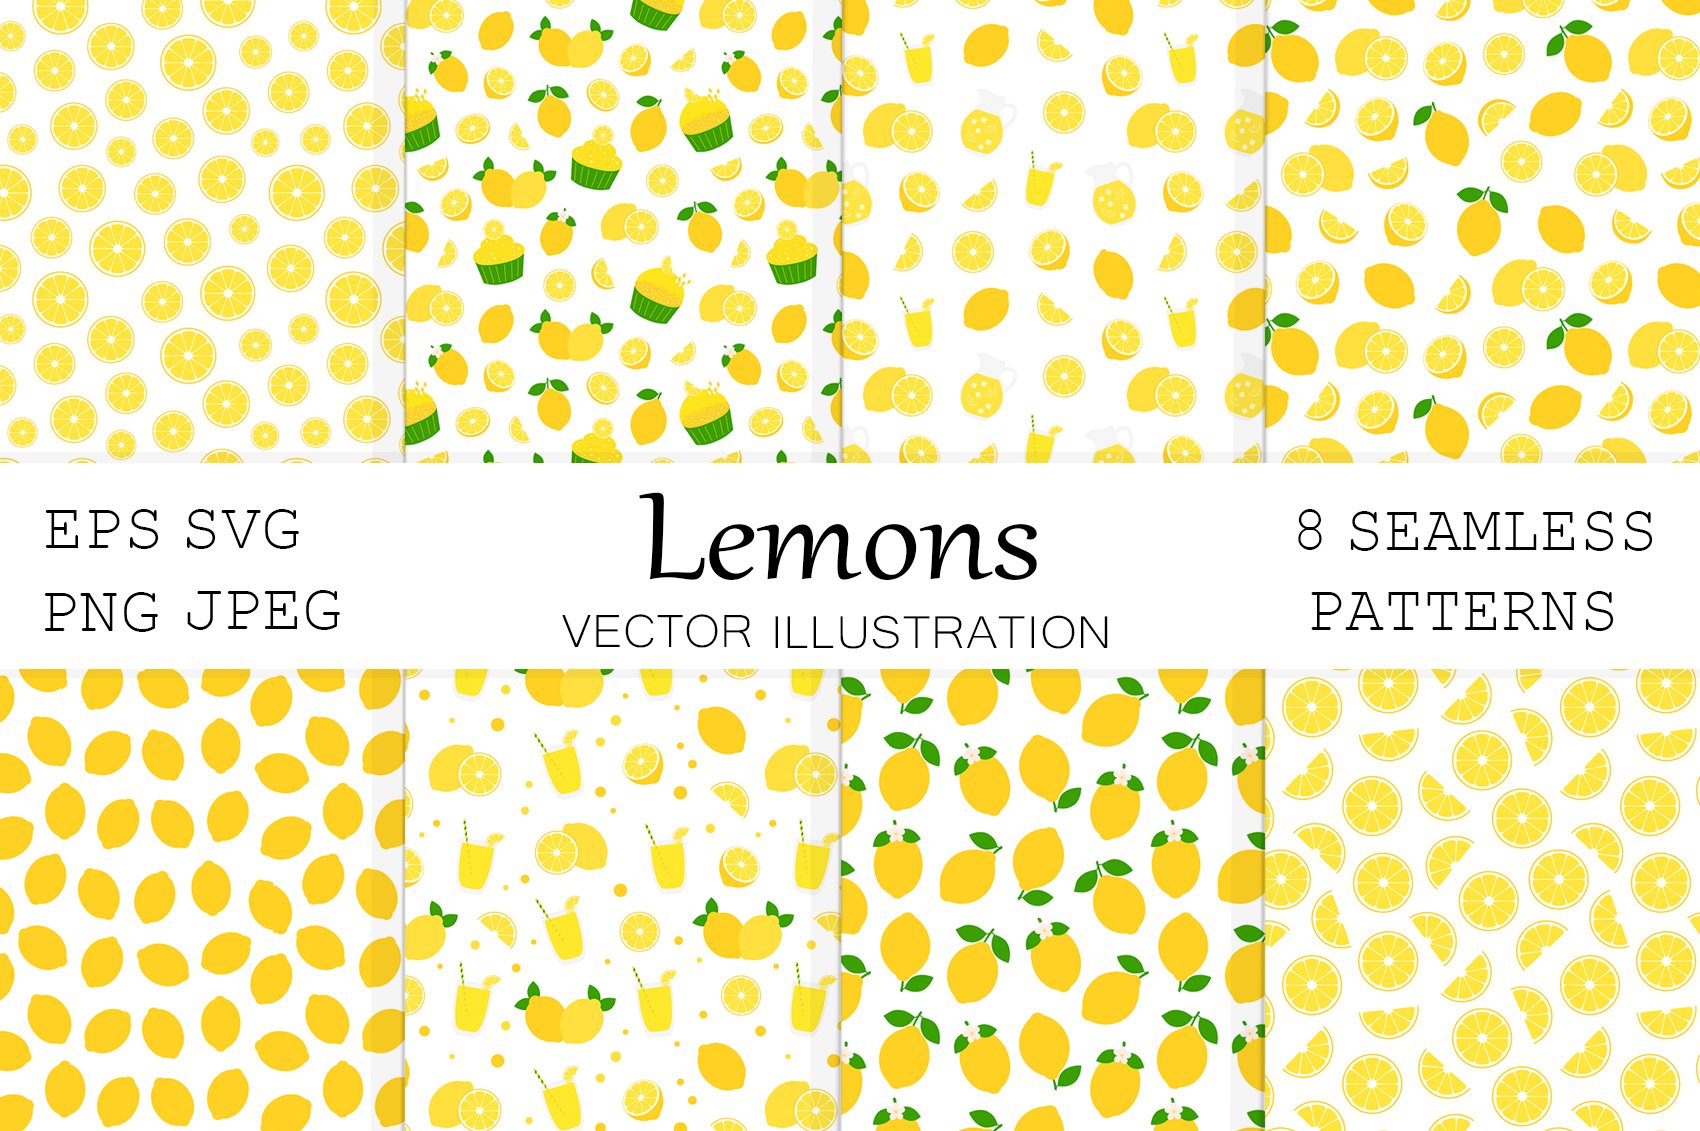 Lemon pattern. Lemon background cover image.